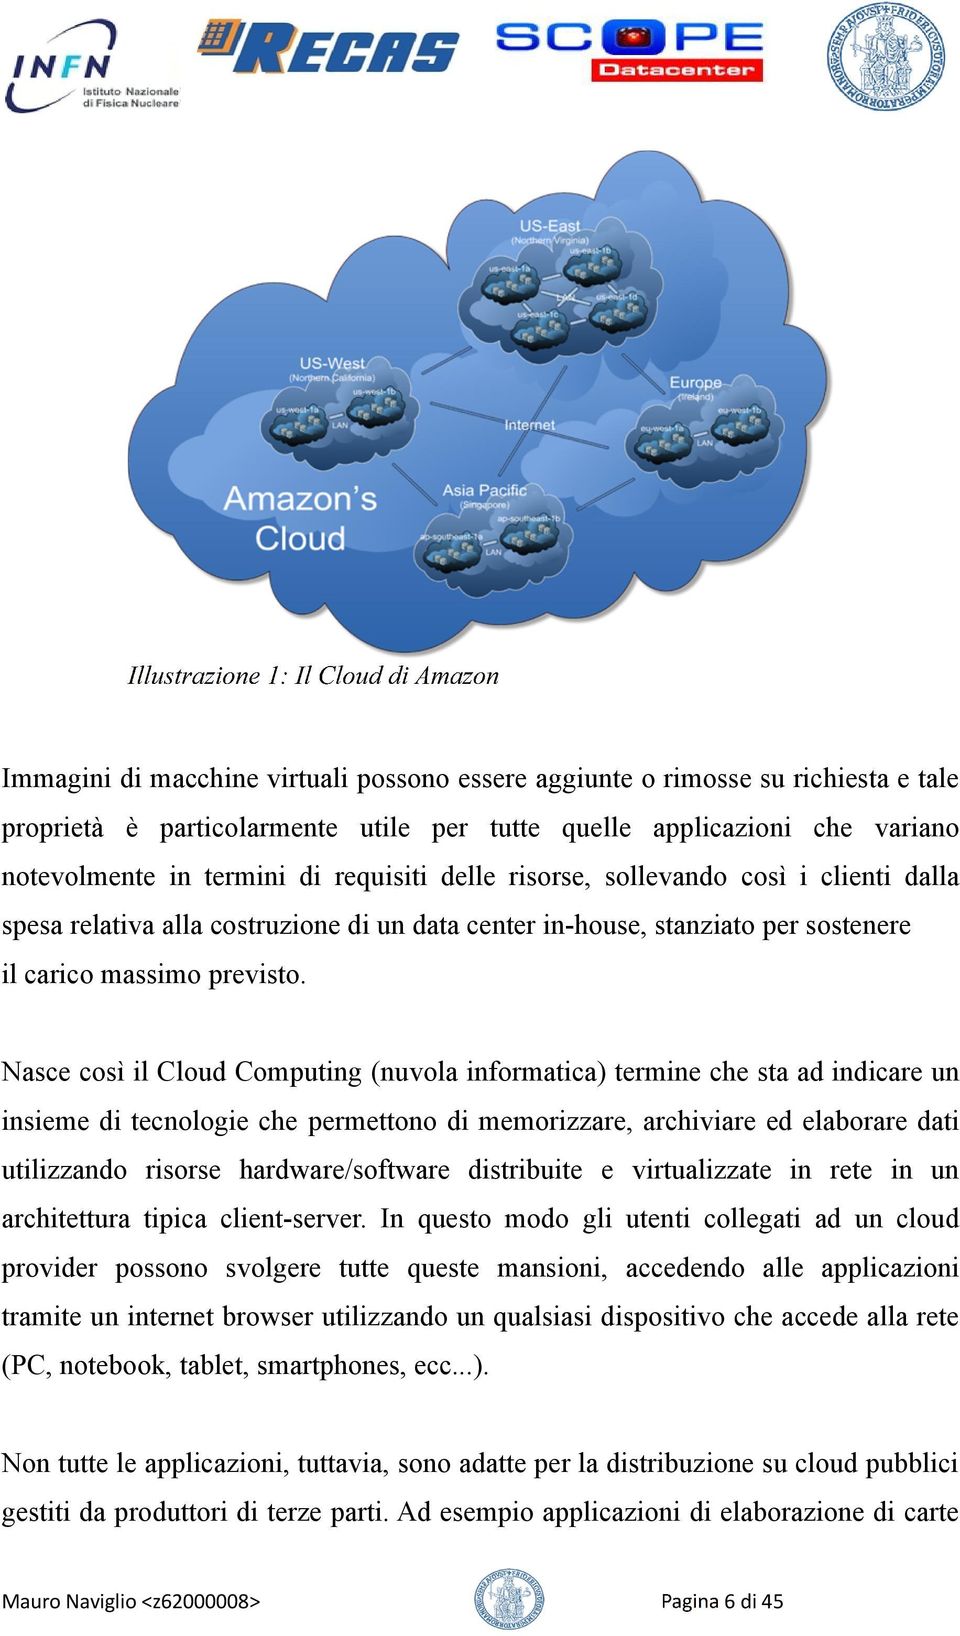 Nasce così il Cloud Computing (nuvola informatica) termine che sta ad indicare un insieme di tecnologie che permettono di memorizzare, archiviare ed elaborare dati utilizzando risorse